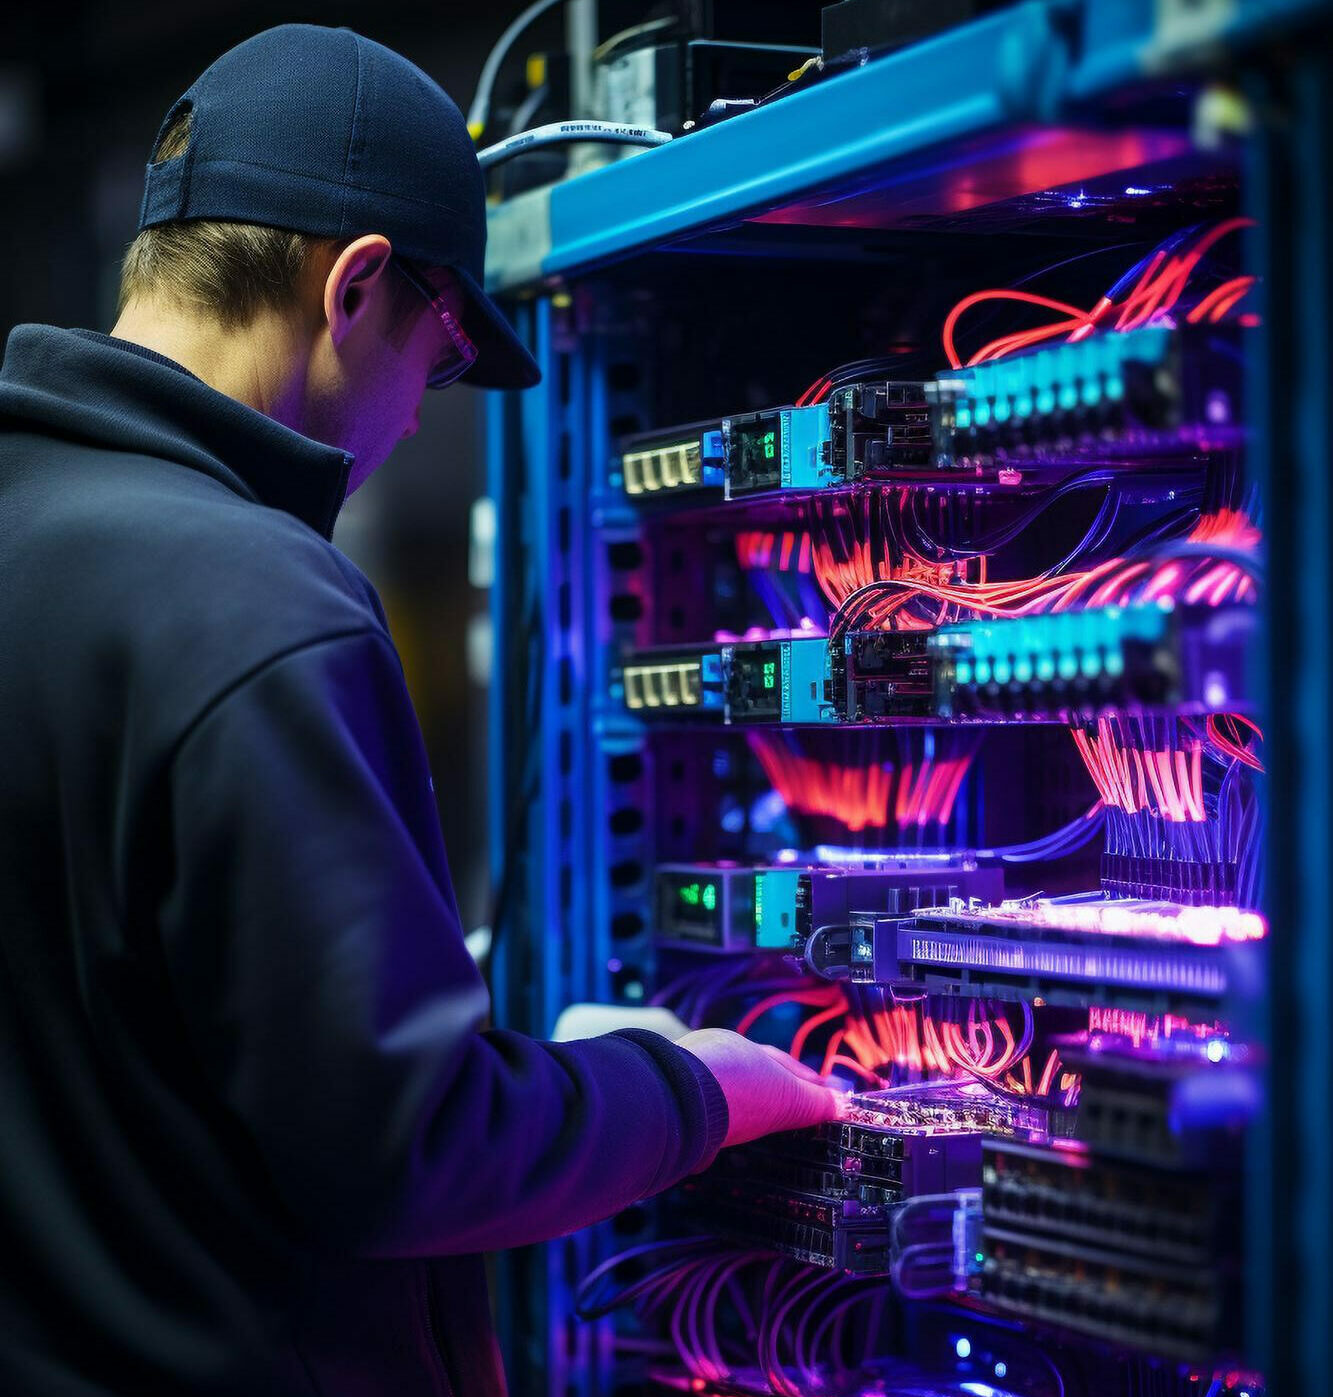 Soporte informático: Técnico profesional realizando mantenimiento en un servidor iluminado